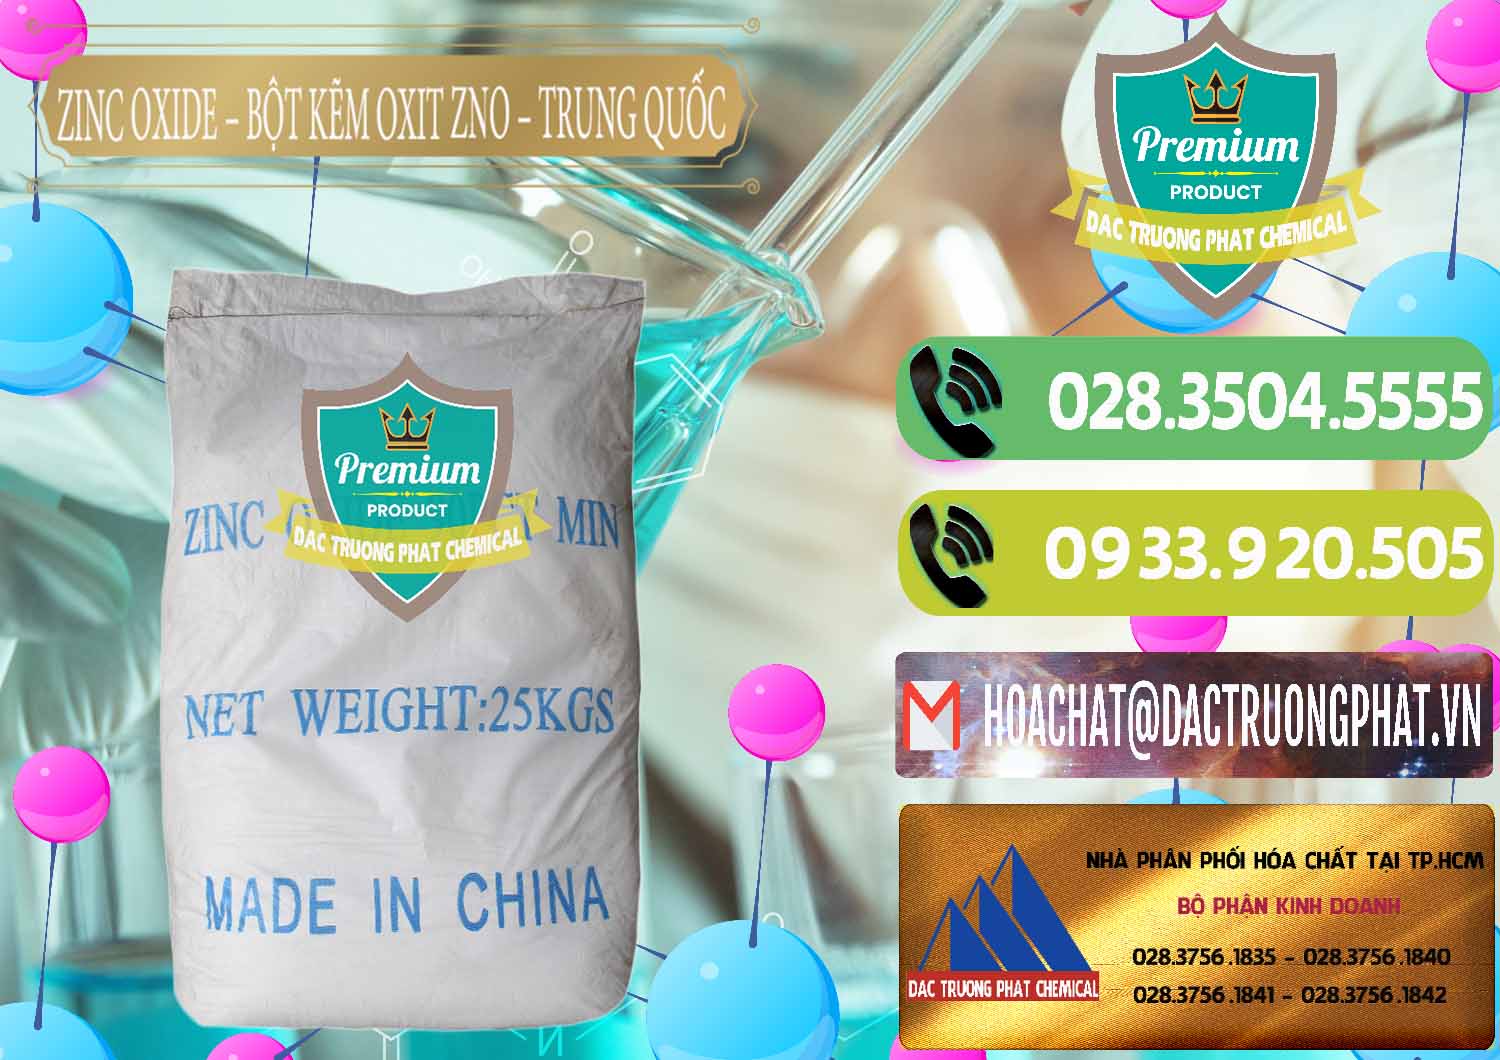 Cty bán _ cung cấp Zinc Oxide - Bột Kẽm Oxit ZNO Trung Quốc China - 0182 - Cty chuyên cung cấp _ nhập khẩu hóa chất tại TP.HCM - hoachatmientay.vn